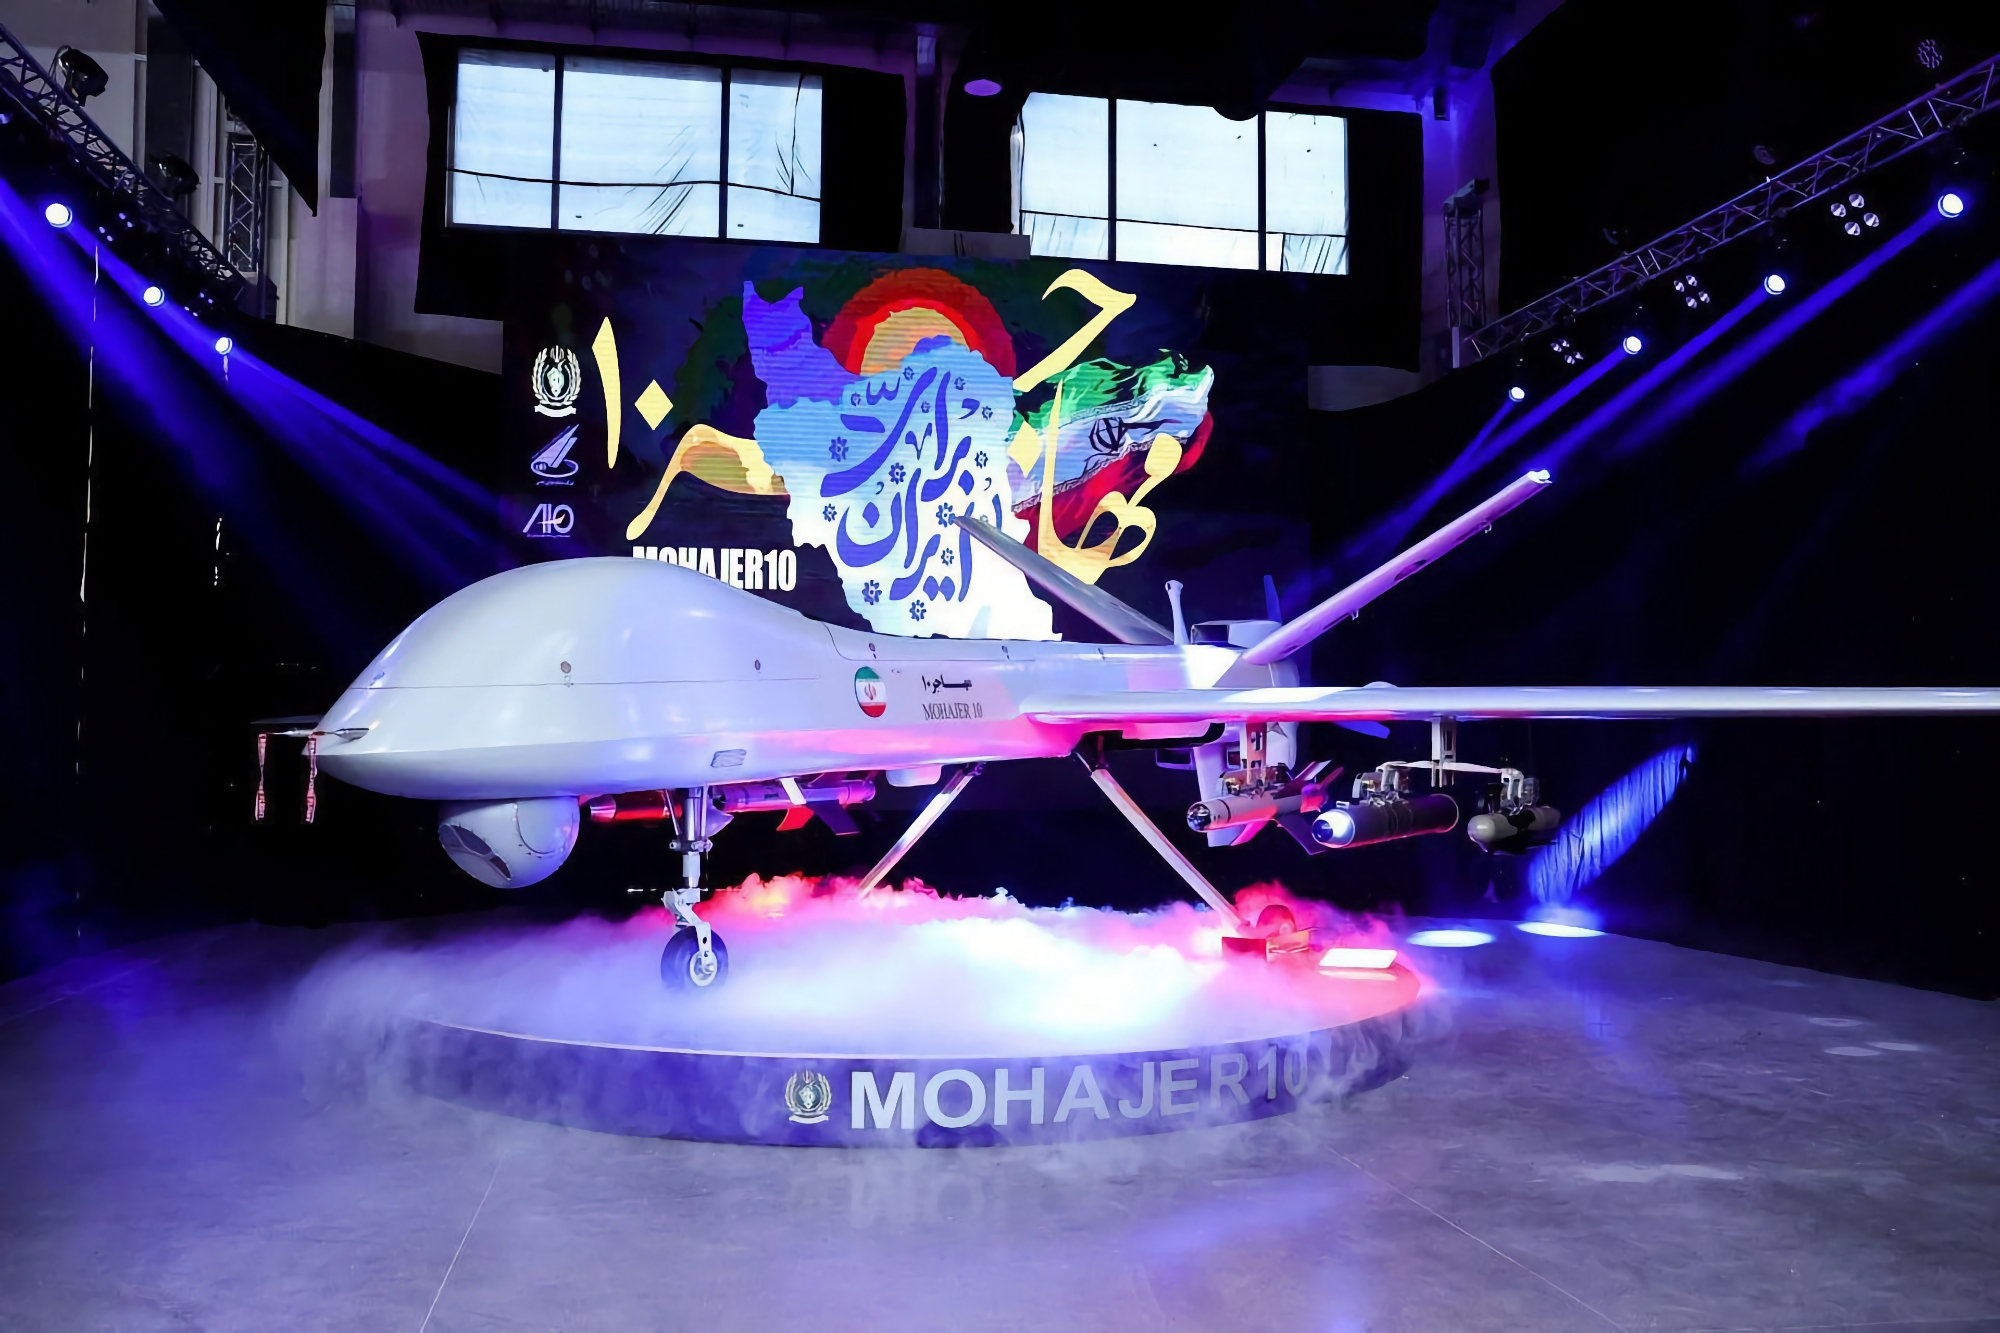 L'Iran ha presentato il drone d'attacco e di ricognizione Mohajer-10 con un design simile all'MQ-9 Reaper, in grado di volare ad una velocità di 210 chilometri orari fino a 2.000 chilometri di distanza.